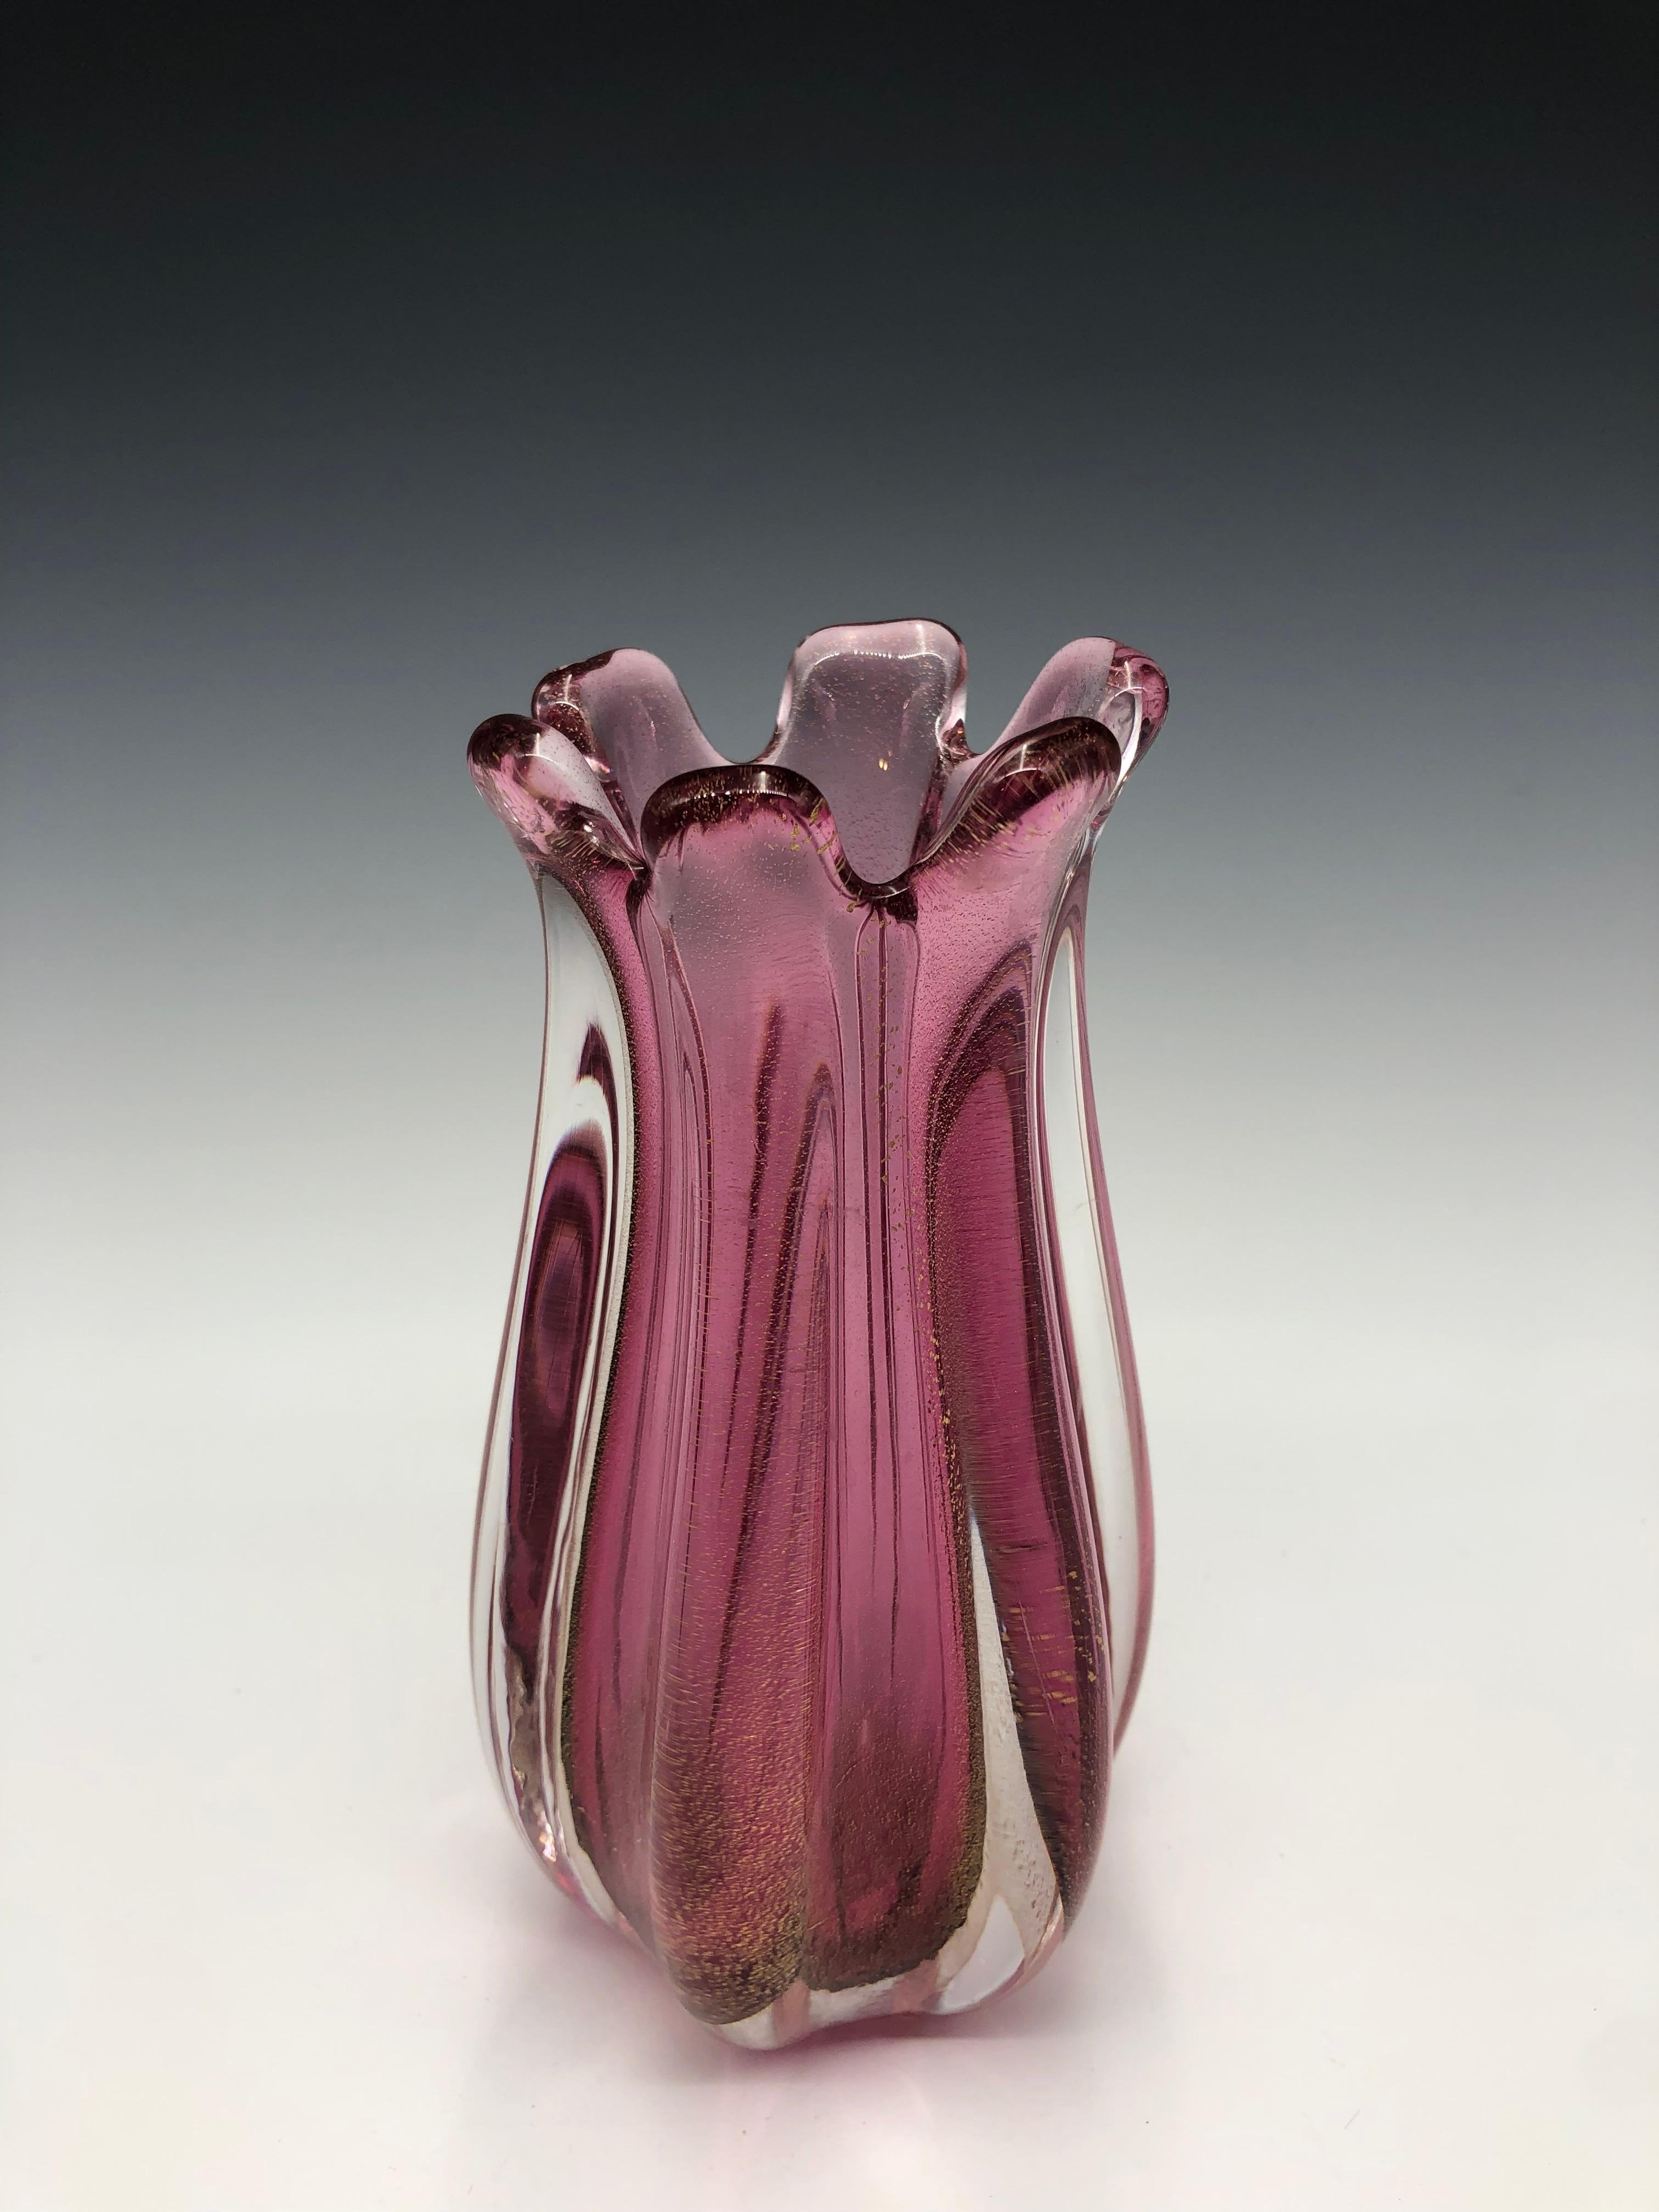 Superbe vase Sommerso en verre rose strié et tacheté d'or de Murano, créé dans un atelier traditionnel de l'île de Murano en utilisant une technique rare de feuille d'or. La feuille d'or 24K est infusée dans le verre cristallo à des températures